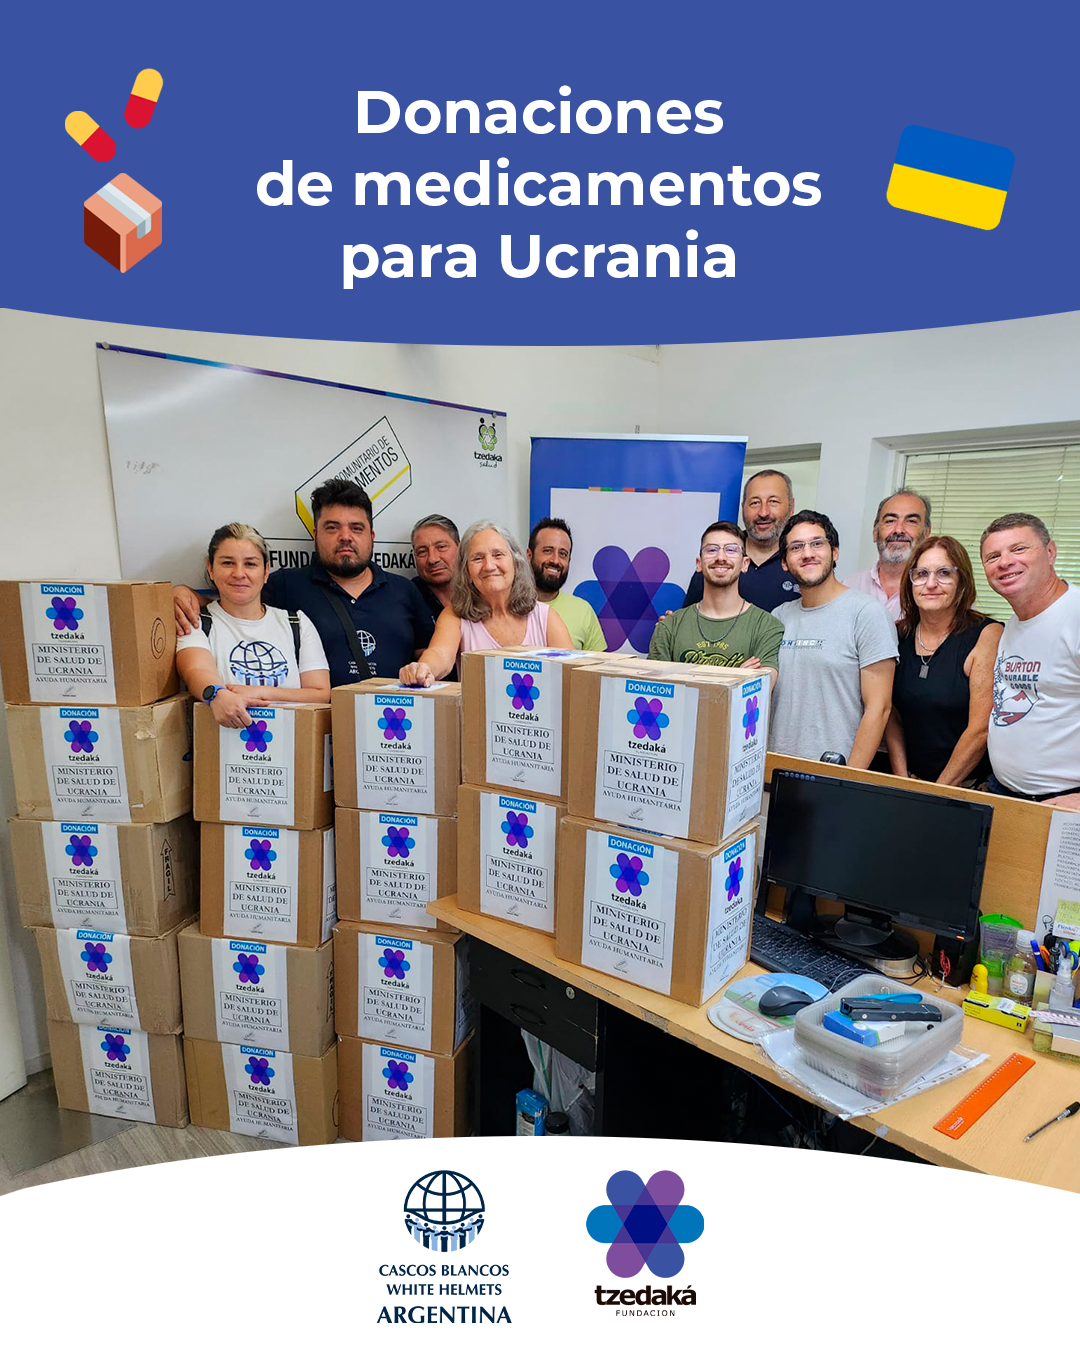 donacion de medicamentos a ucrania desde fundacion tzedaka